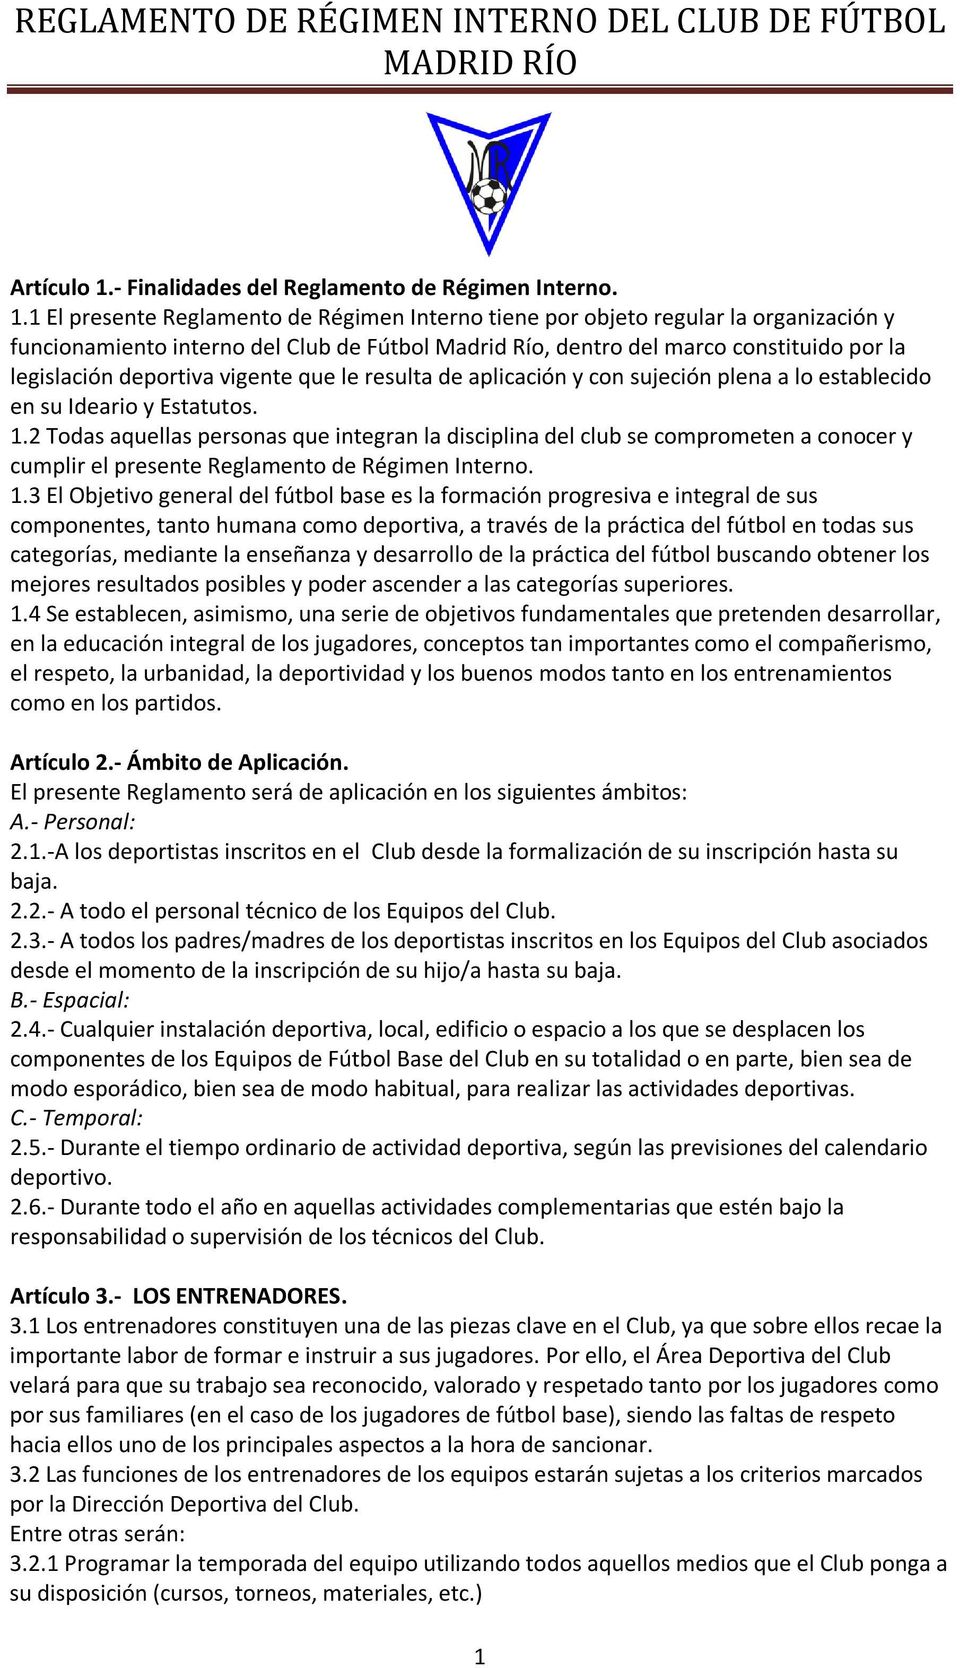 1 El presente Reglamento de Régimen Interno tiene por objeto regular la organización y funcionamiento interno del Club de Fútbol Madrid Río, dentro del marco constituido por la legislación deportiva